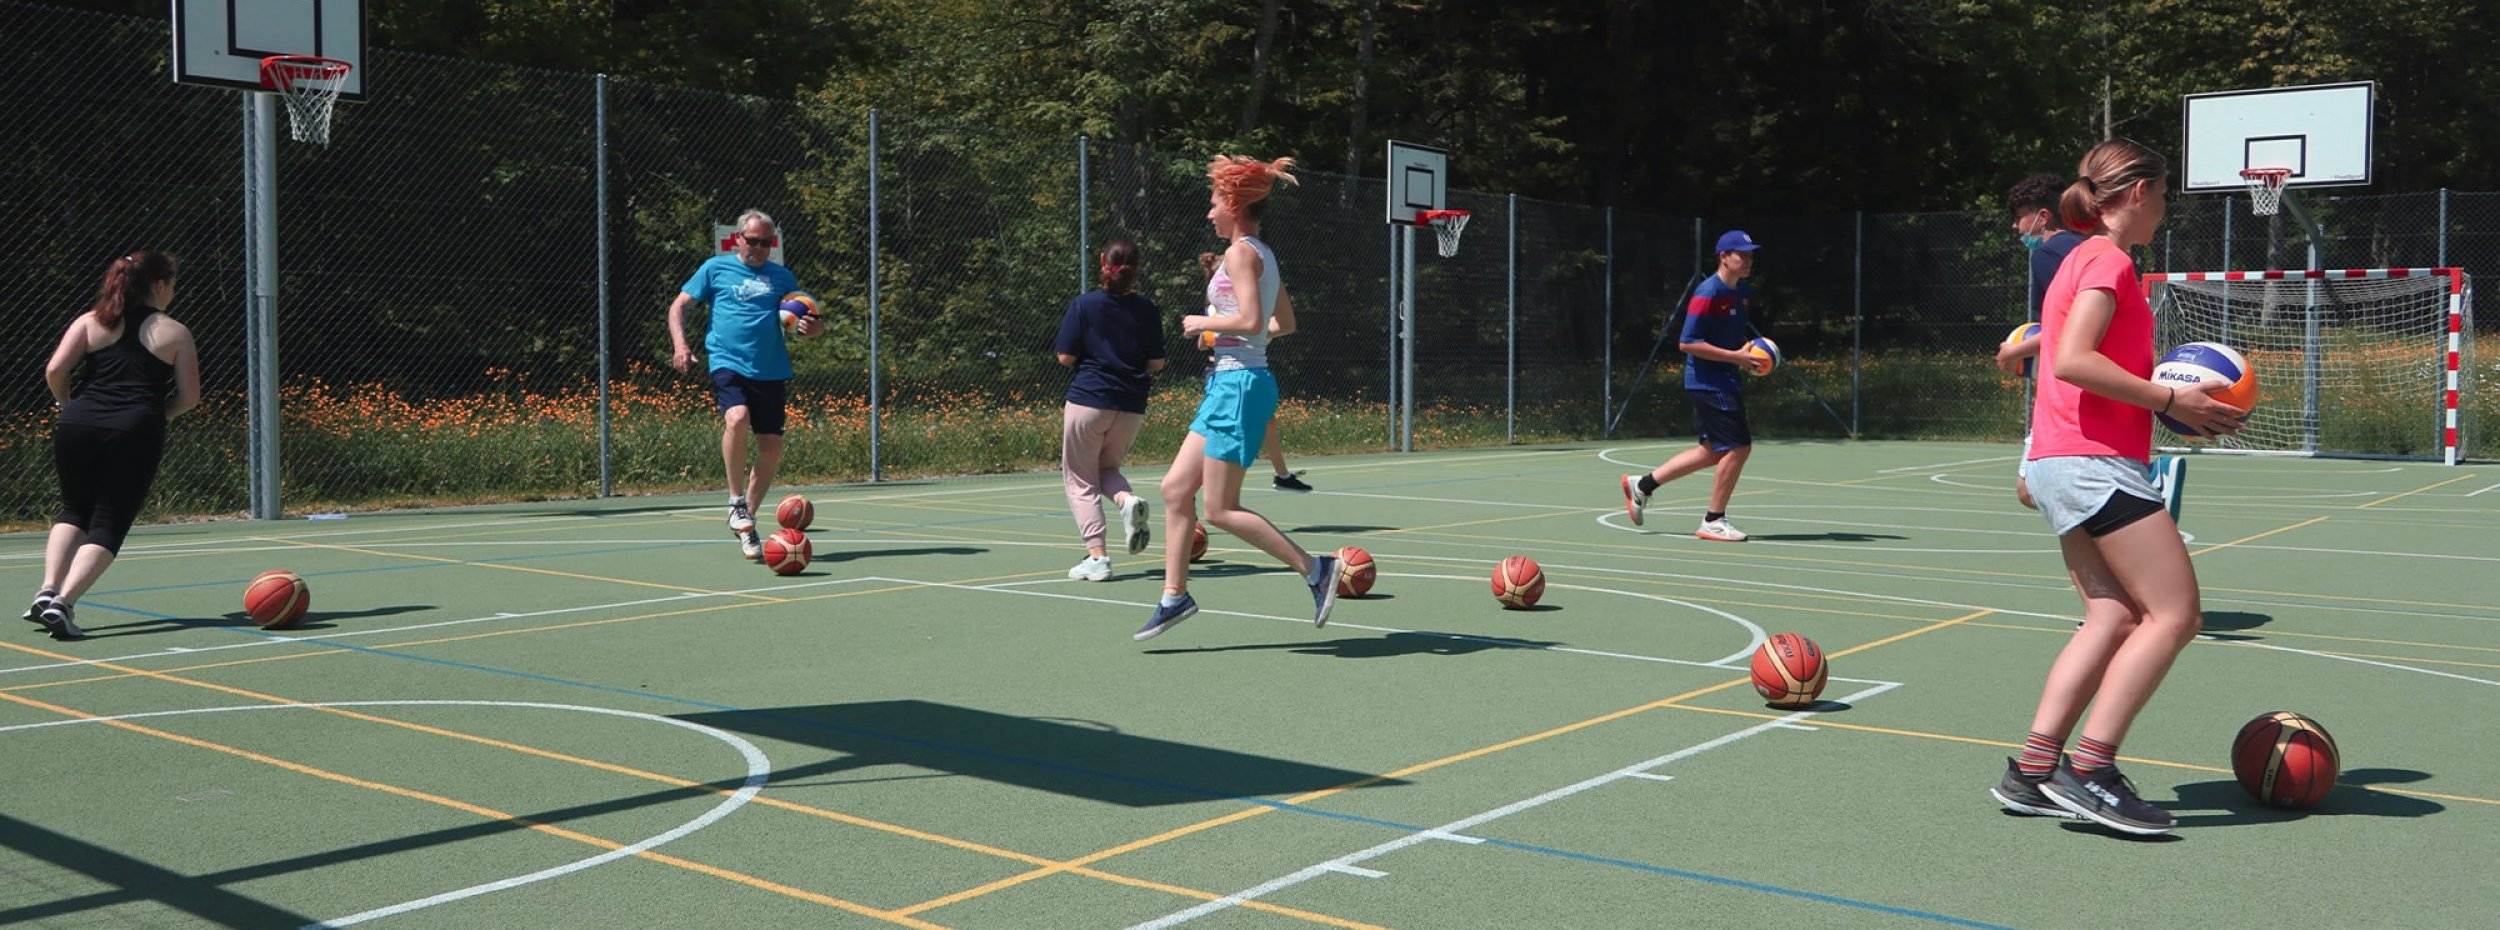 Des personnes jouent sur un terrain de basket extérieur